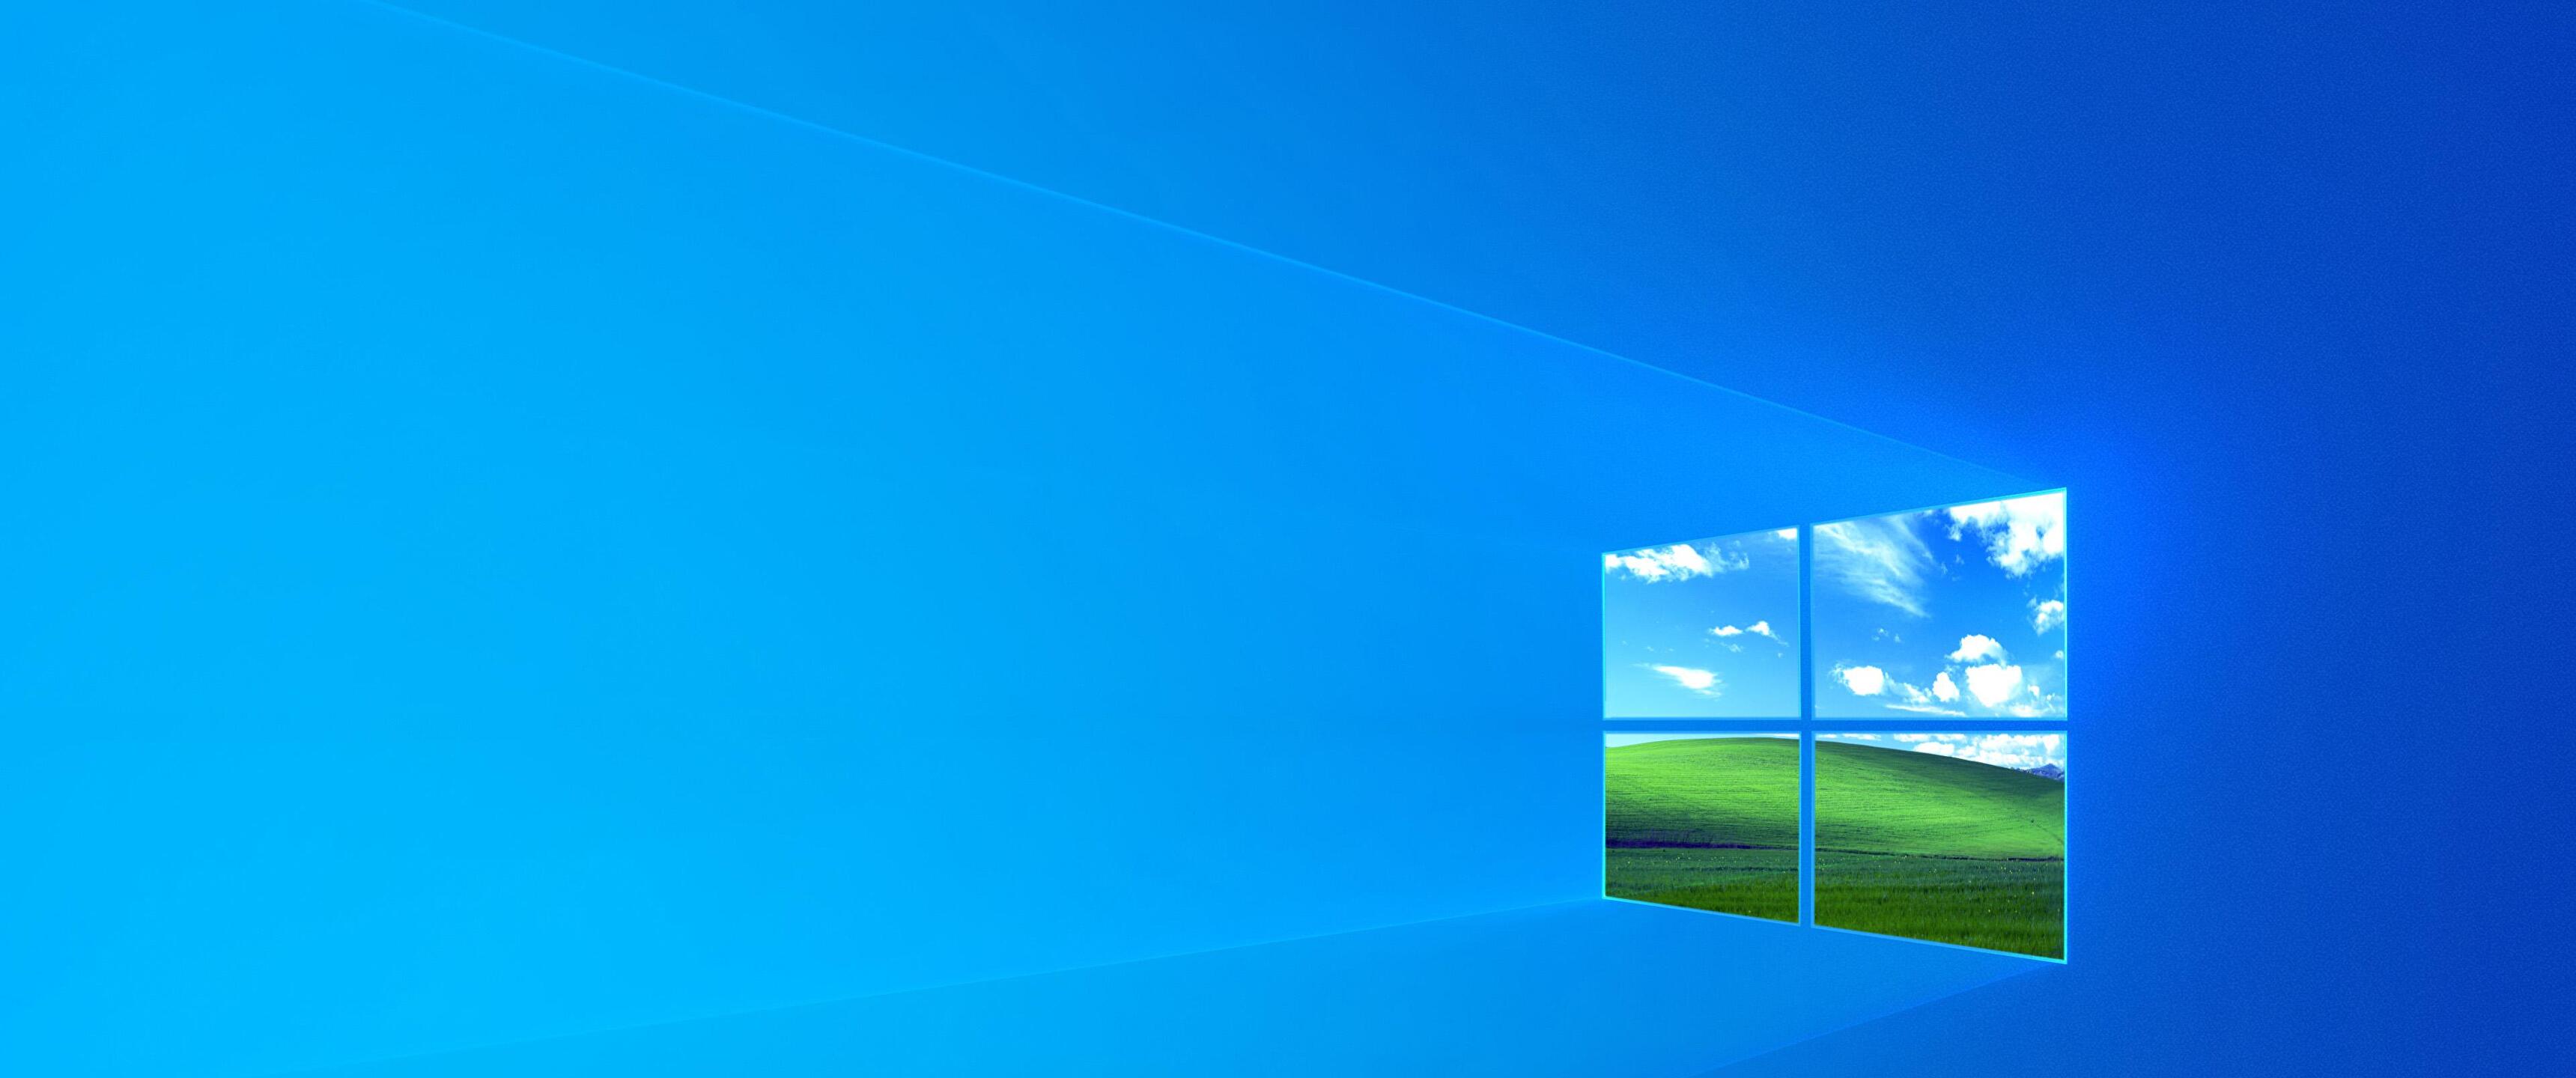 Windows 10 Default Wallpapers